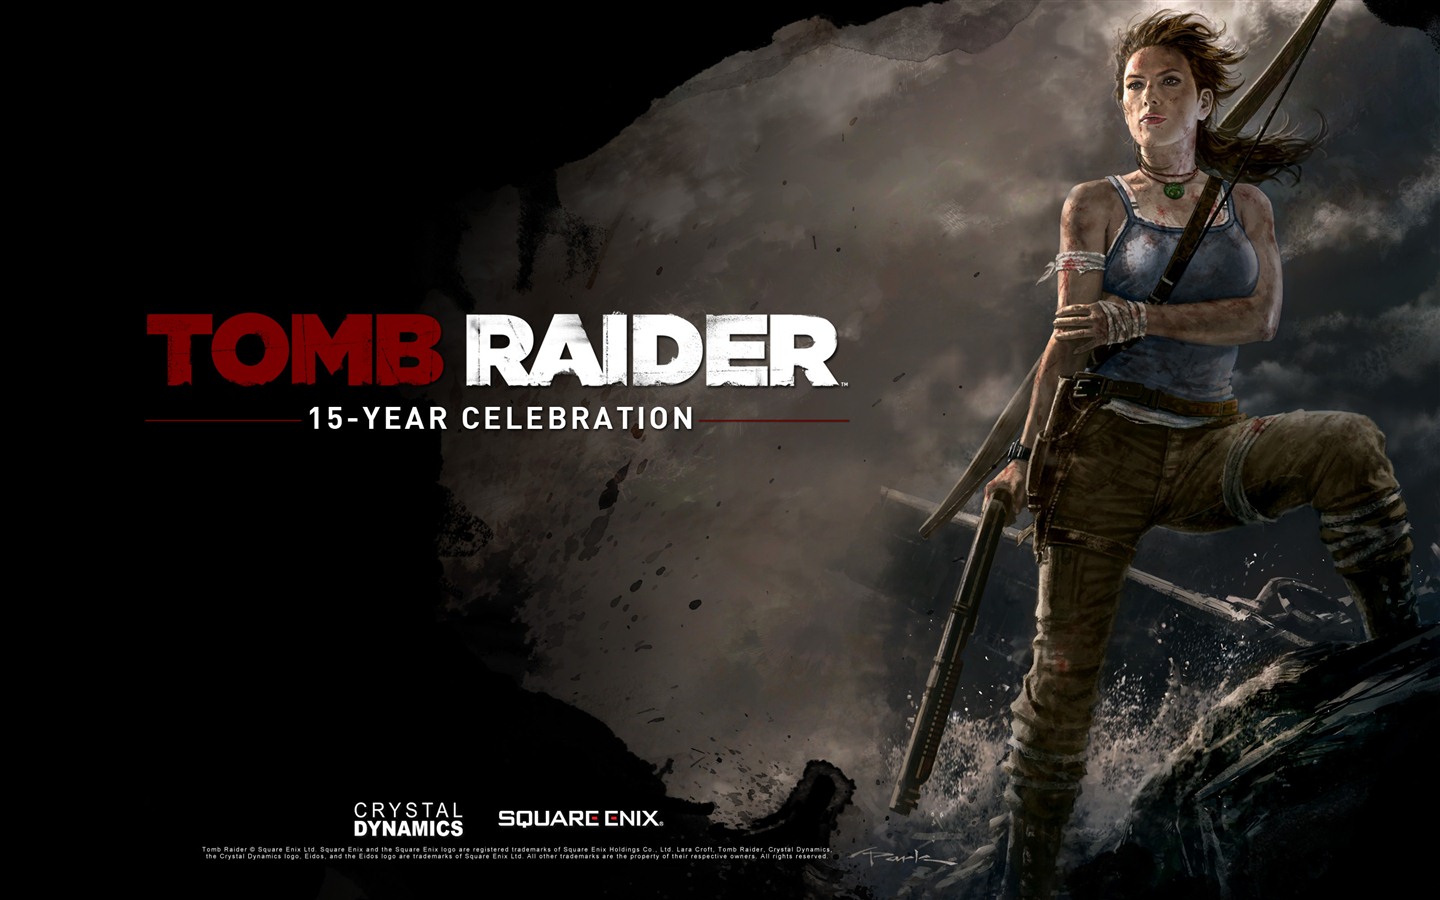 Tomb Raider 15-Year Celebration 古墓丽影15周年纪念版 高清壁纸1 - 1440x900